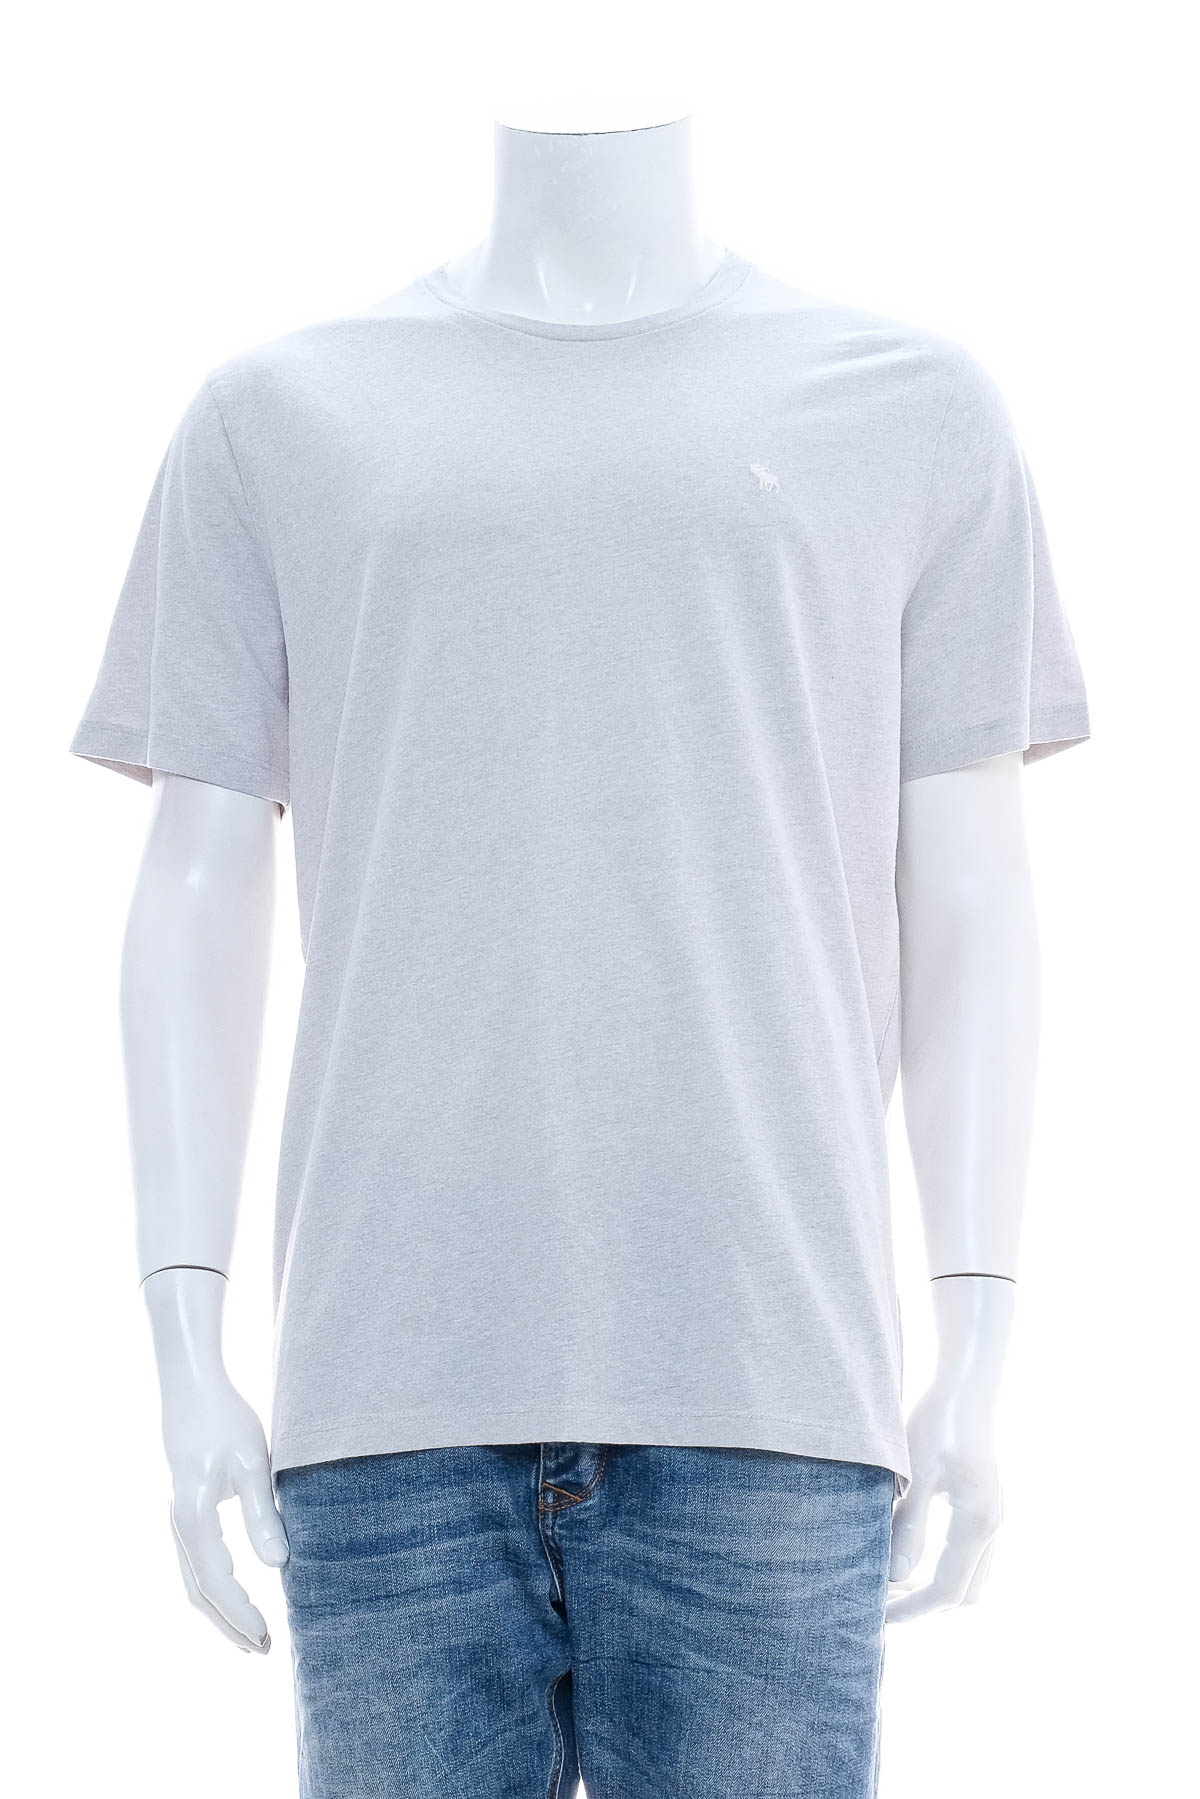 Αντρική μπλούζα - Abercrombie & Fitch - 0